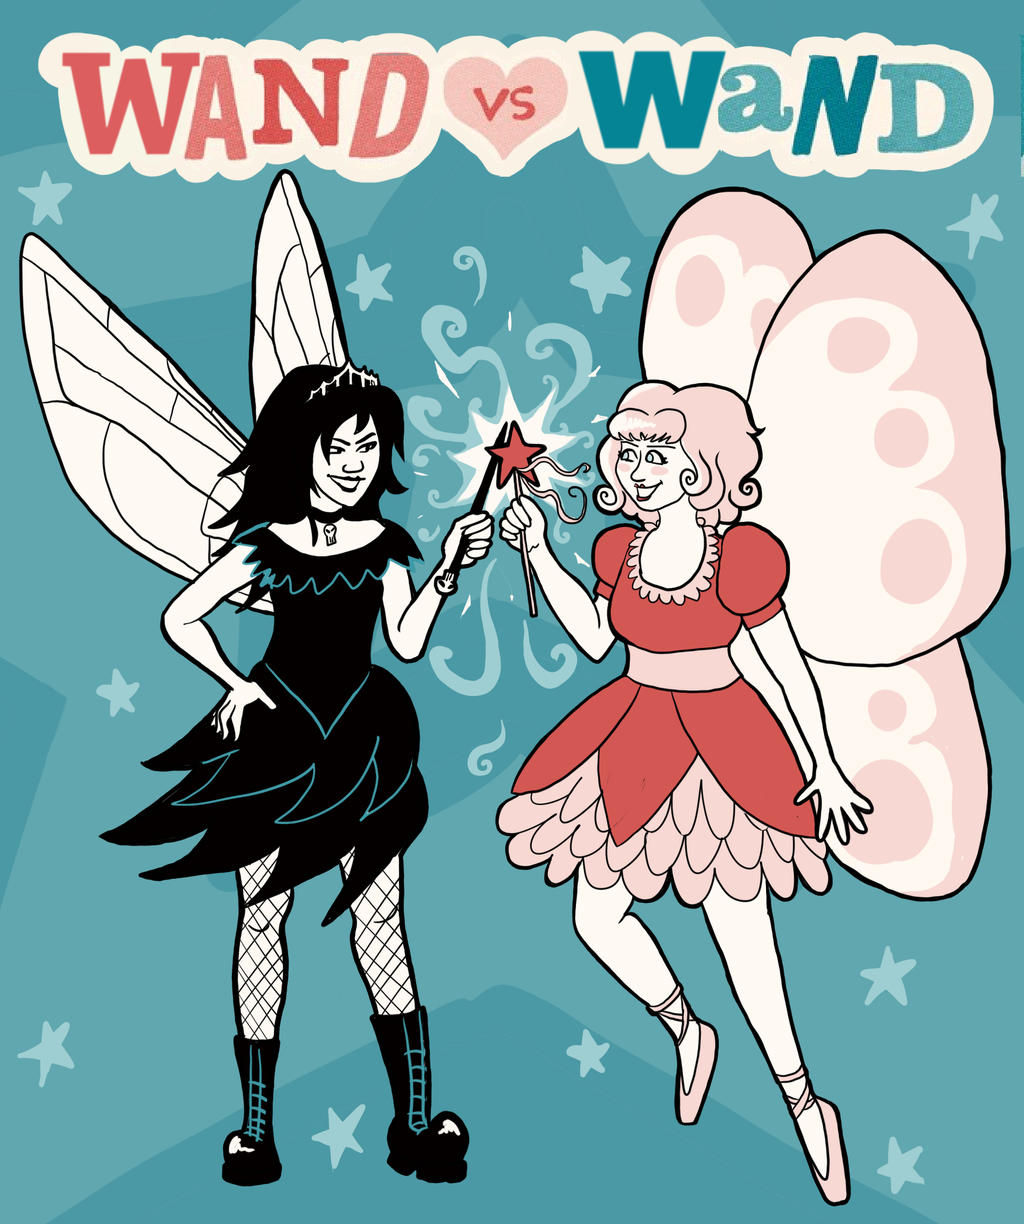 Band vs Band: Wand vs Wand